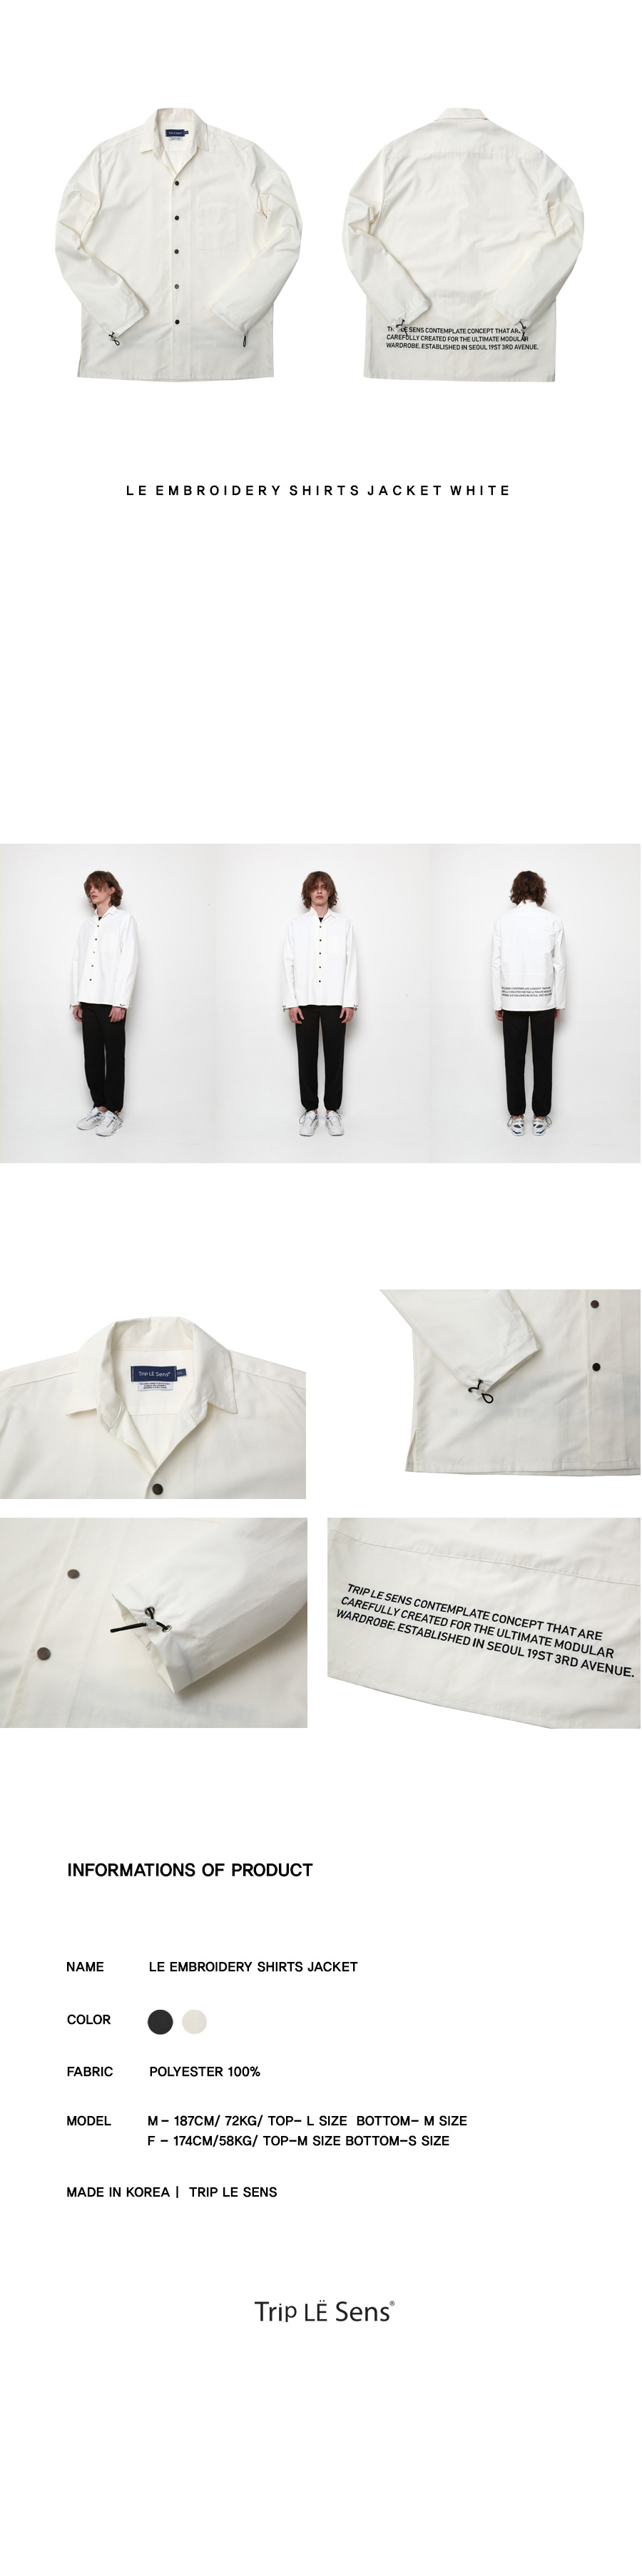 バックレタリングシャツジャケット(ホワイト) | 詳細画像4